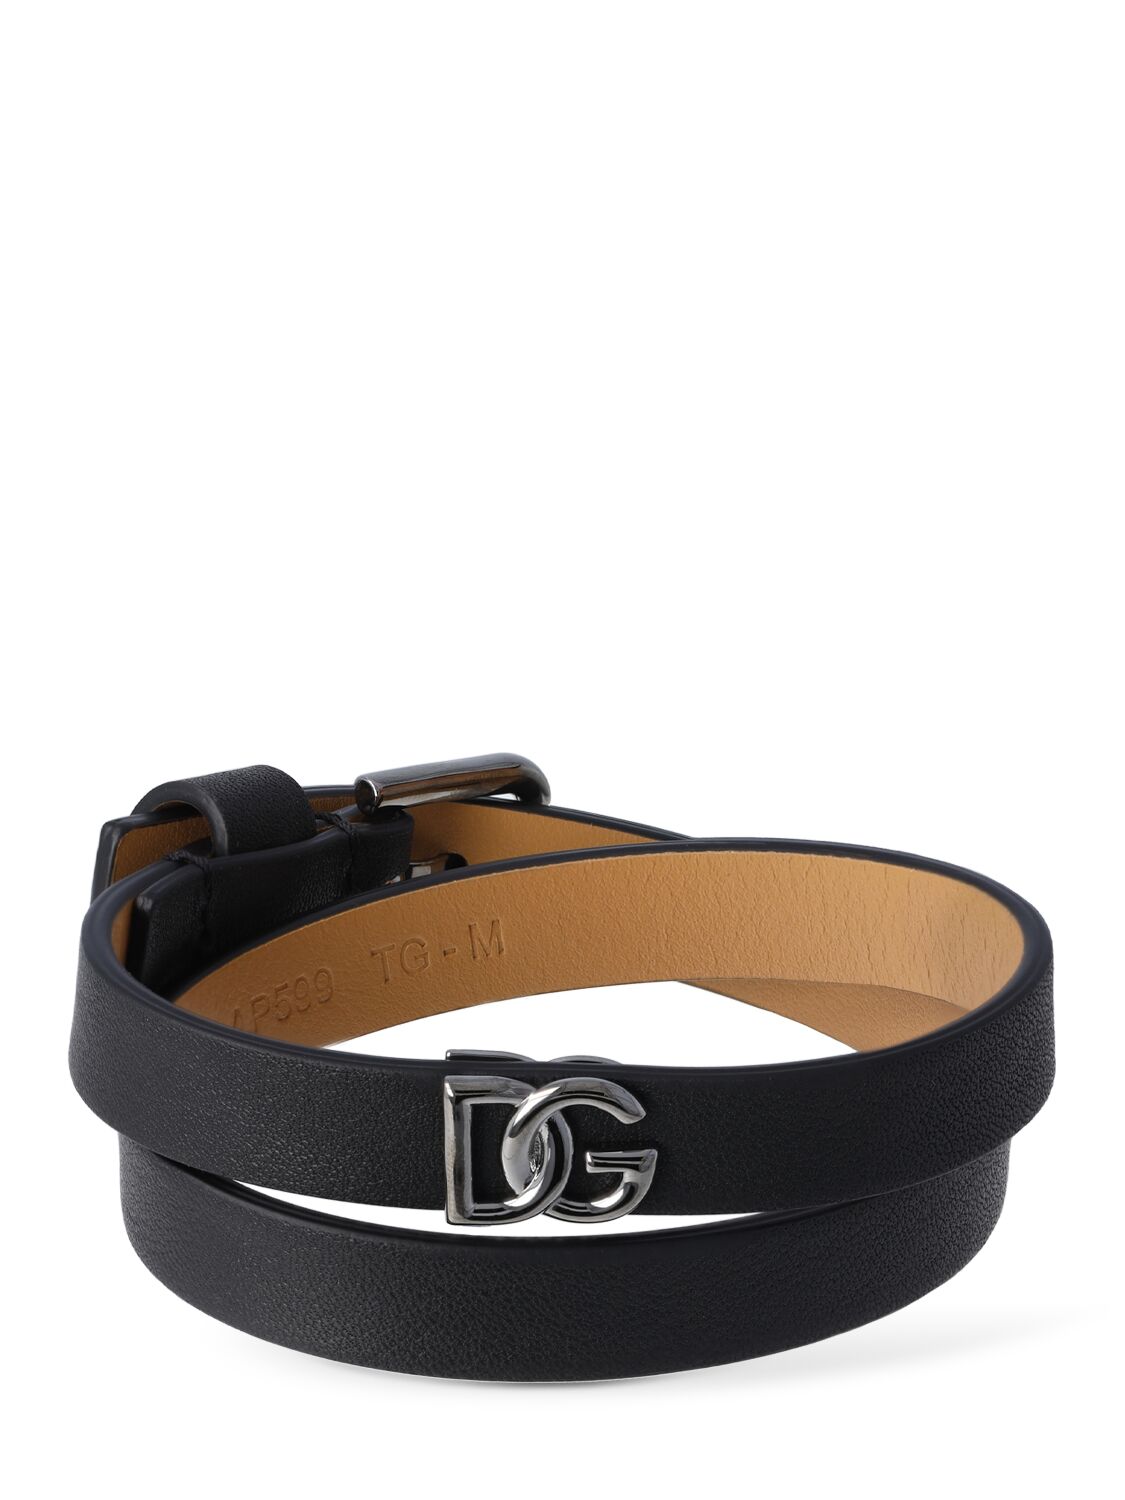 Dg Logo Double Wrap Leather Bracelet